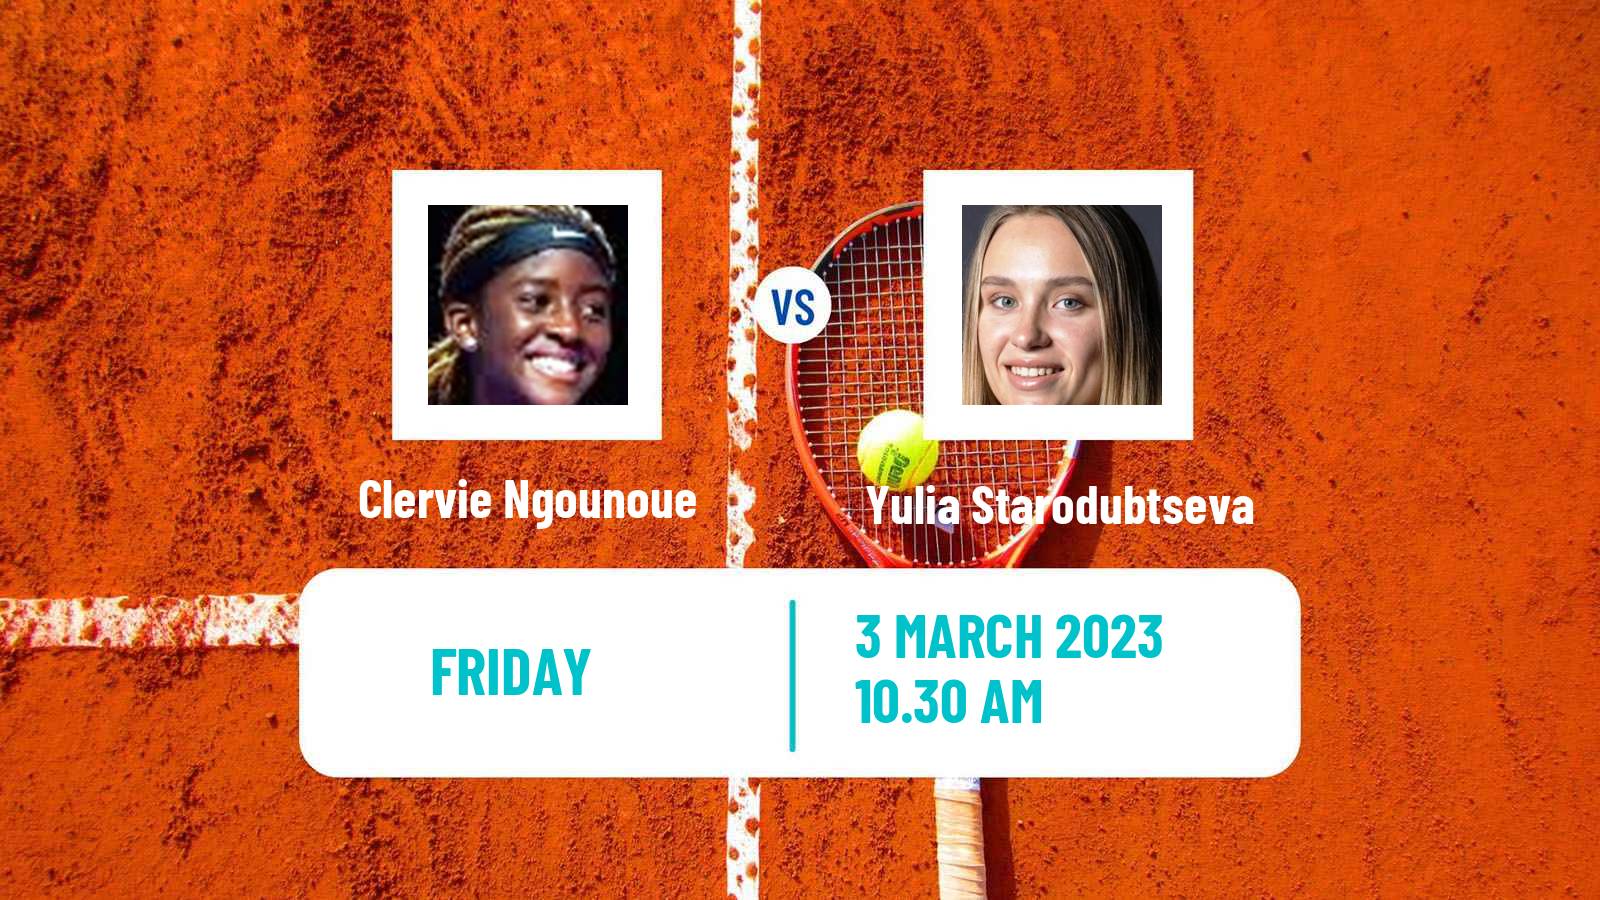 Tennis ITF Tournaments Clervie Ngounoue - Yulia Starodubtseva